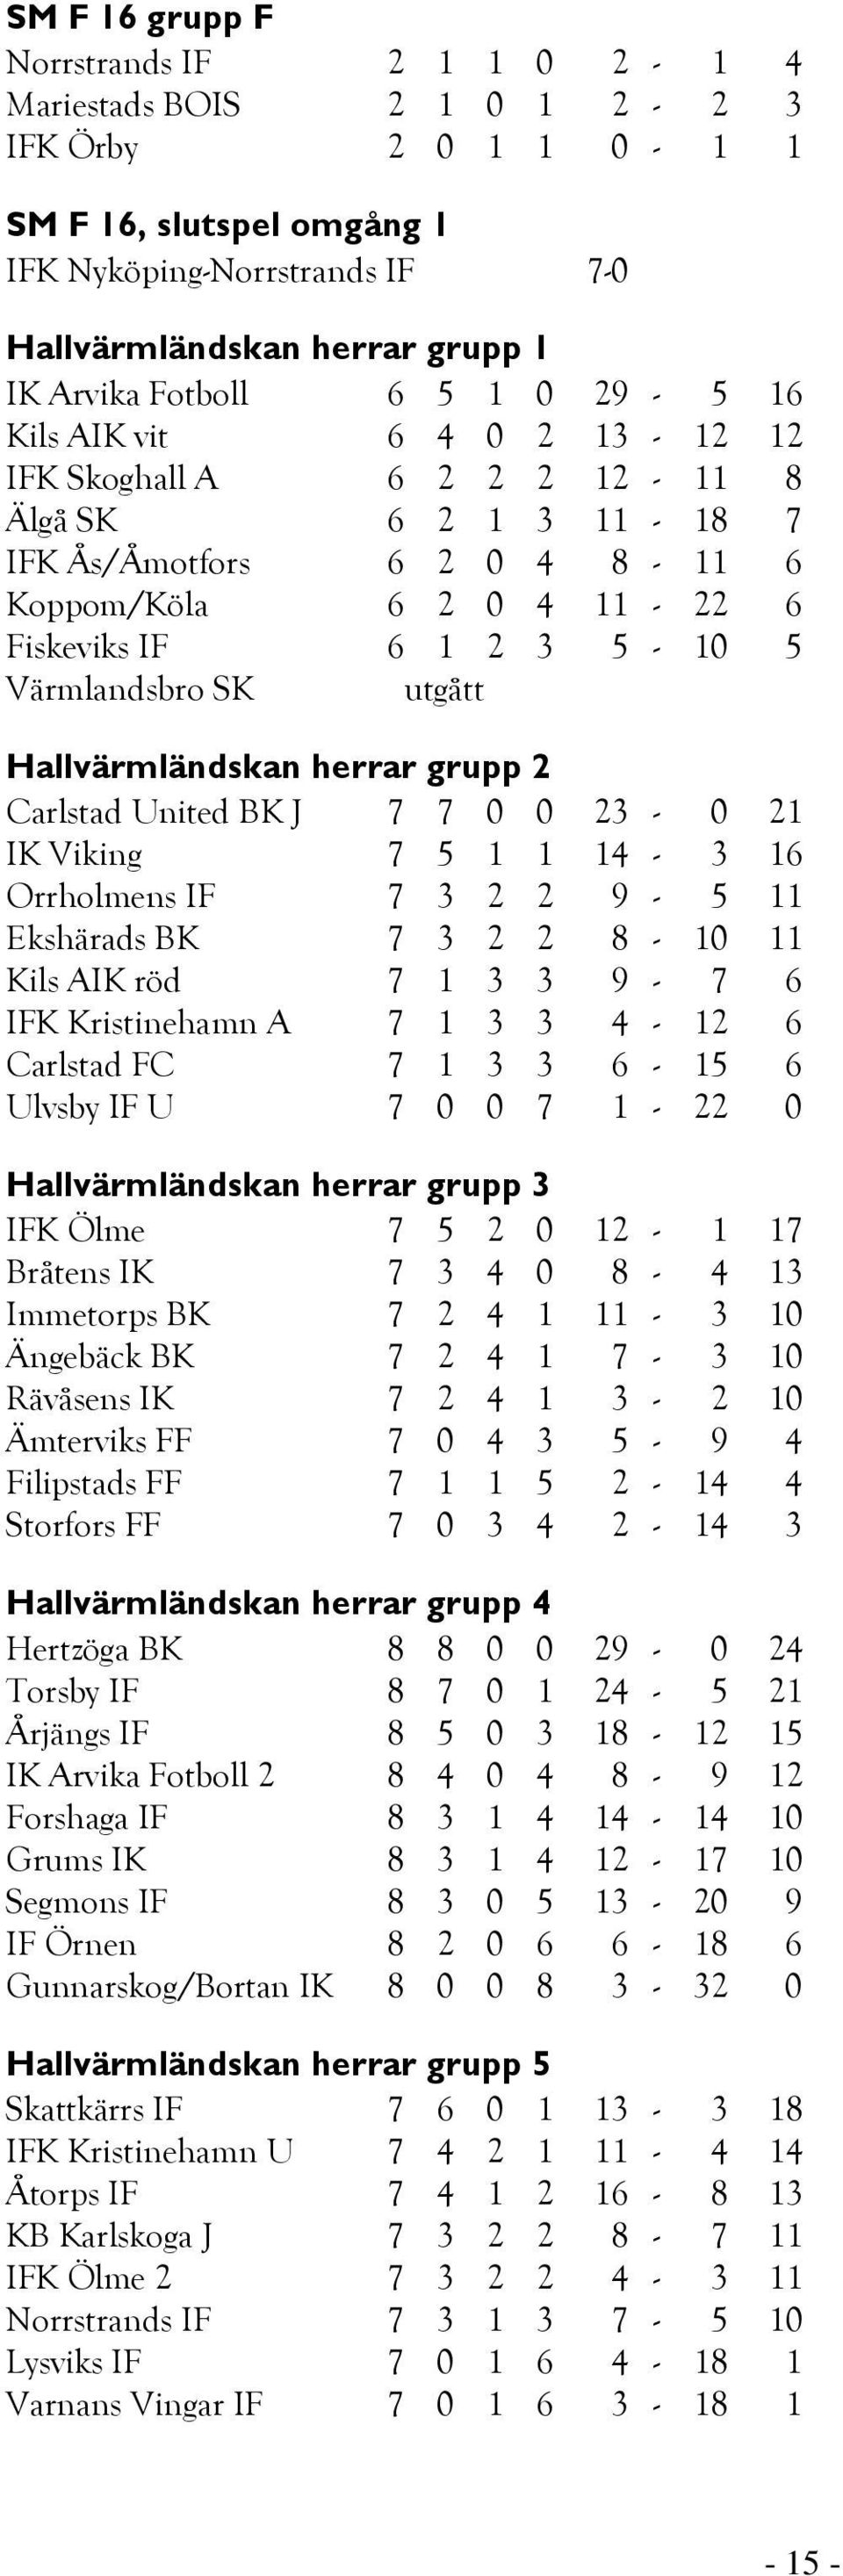 Värmlandsbro SK Hallvärmländskan herrar grupp 2 Carlstad United BK J 7 7 0 0 23-0 21 IK Viking 7 5 1 1 14-3 16 Orrholmens IF 7 3 2 2 9-5 11 Ekshärads BK 7 3 2 2 8-10 11 Kils AIK röd 7 1 3 3 9-7 6 IFK